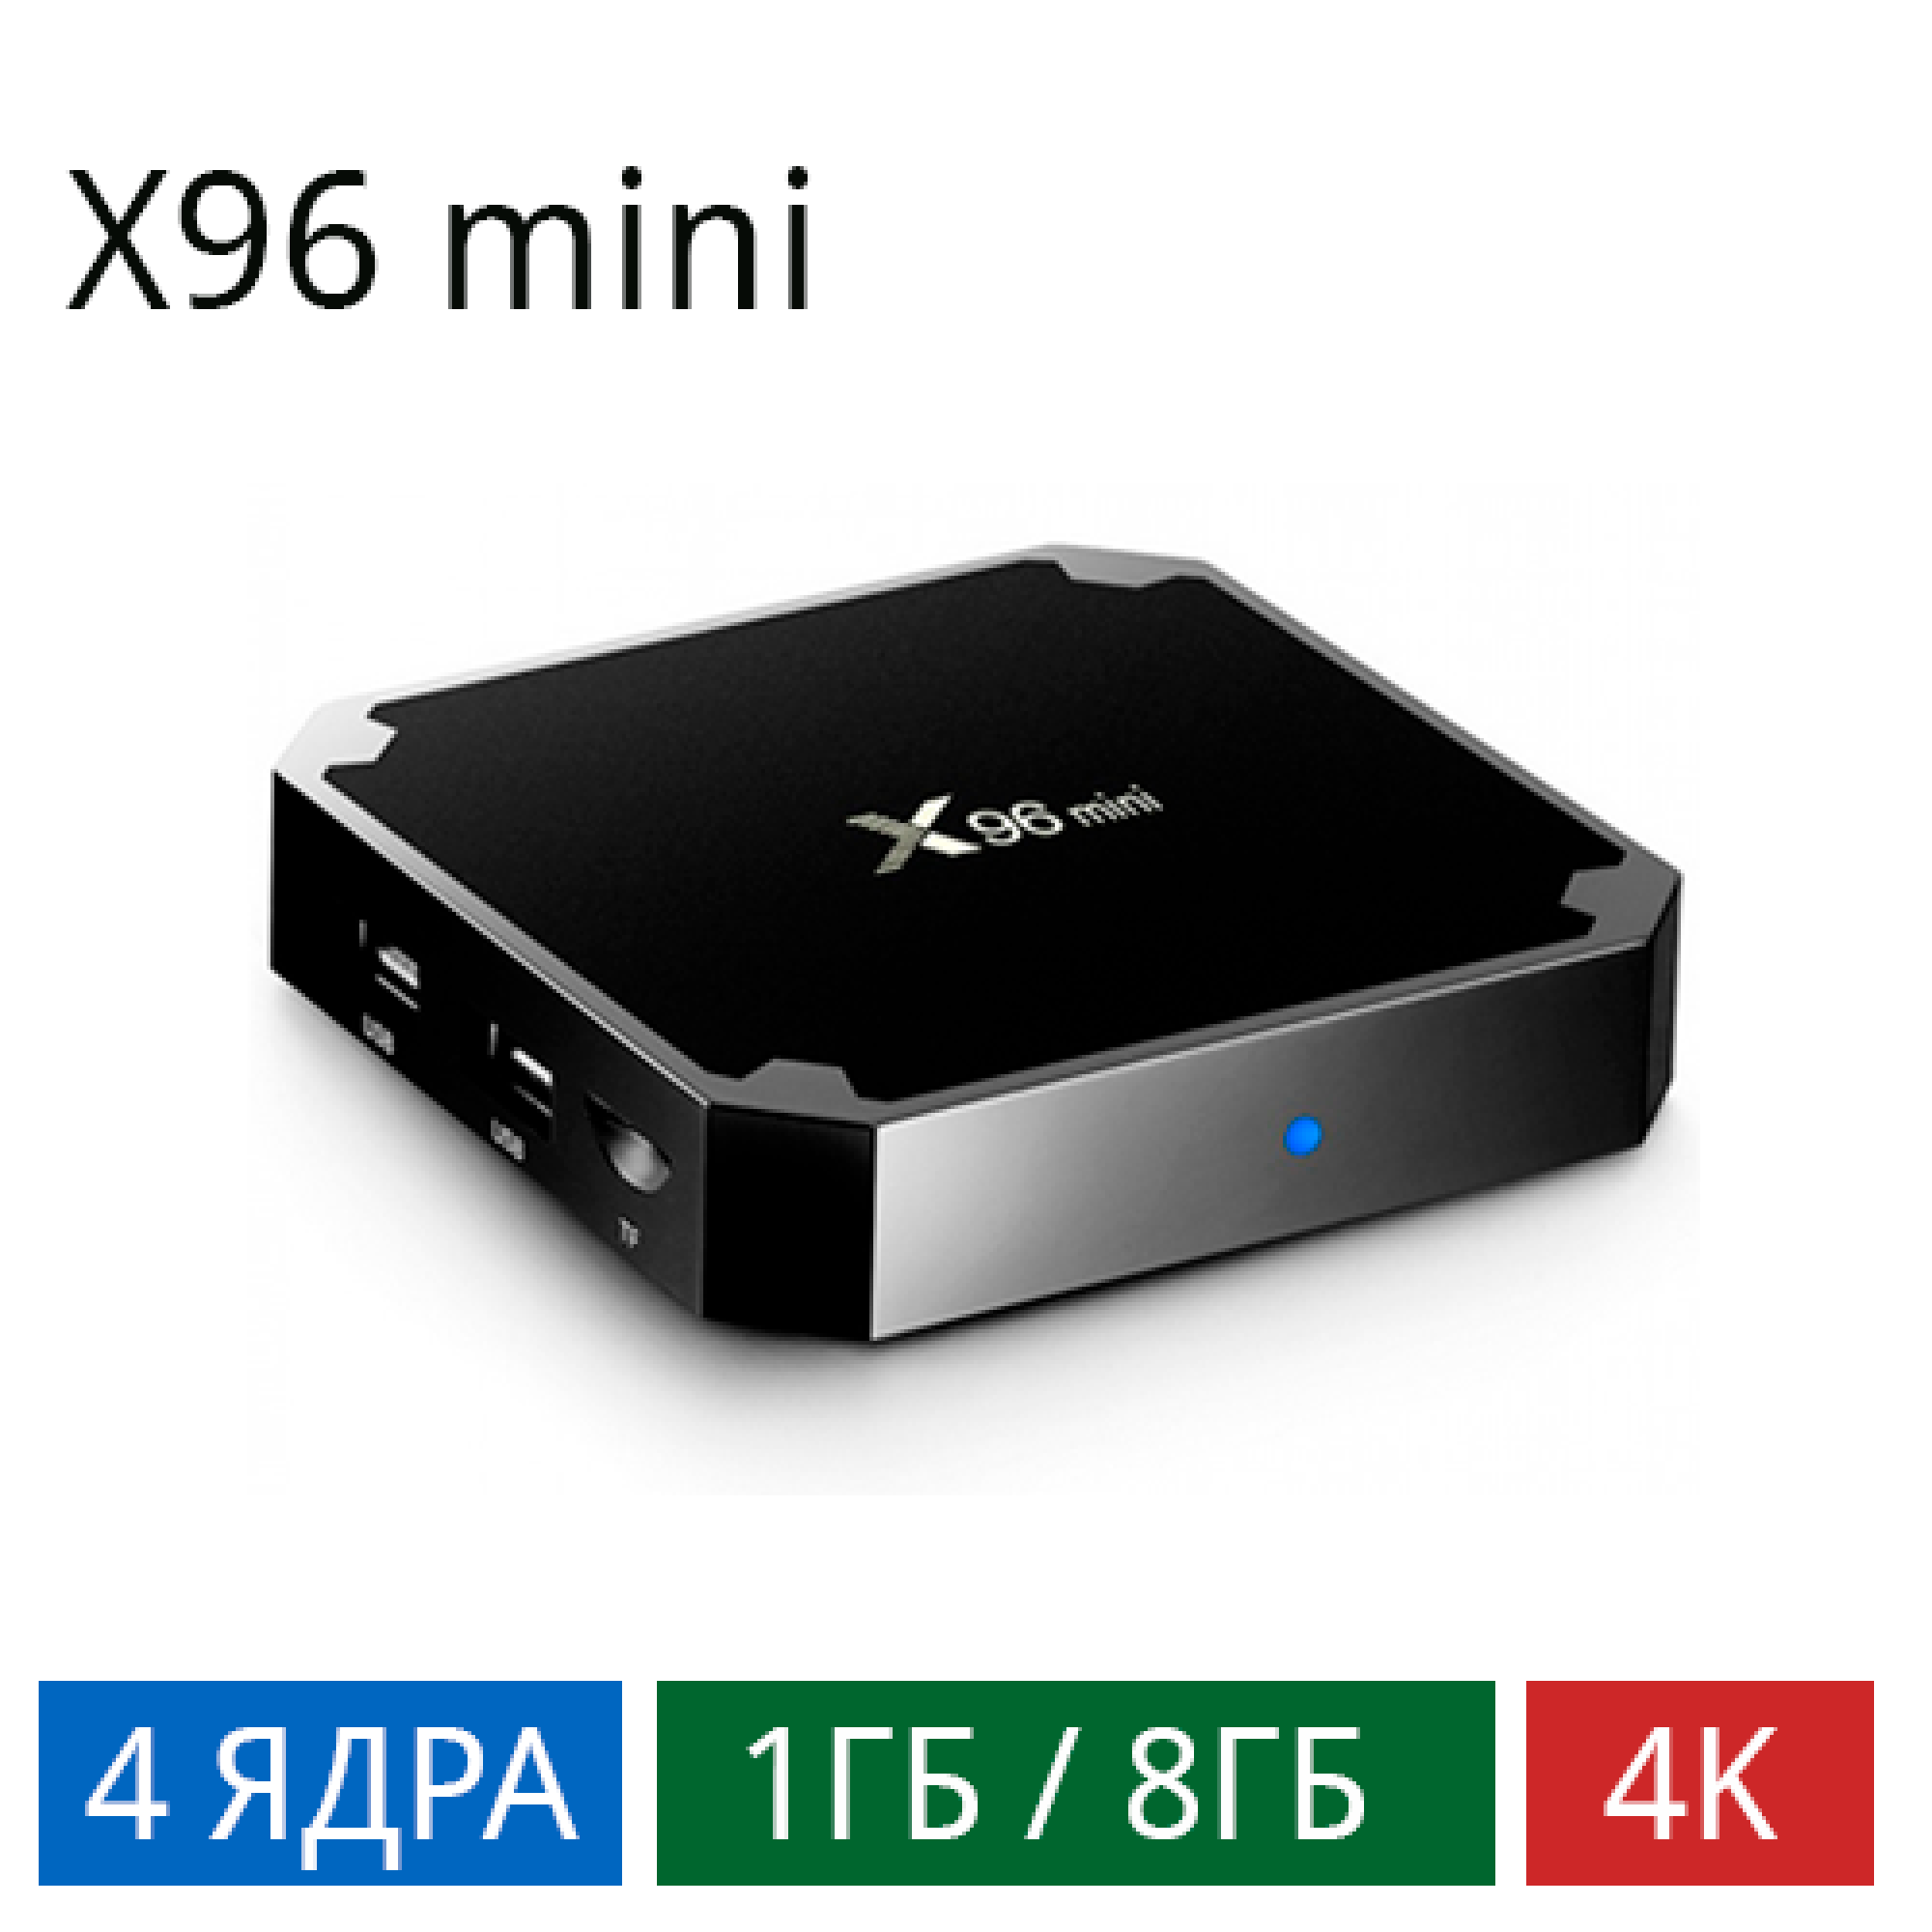 ТВ-приставка X96 mini 4/1G/8G